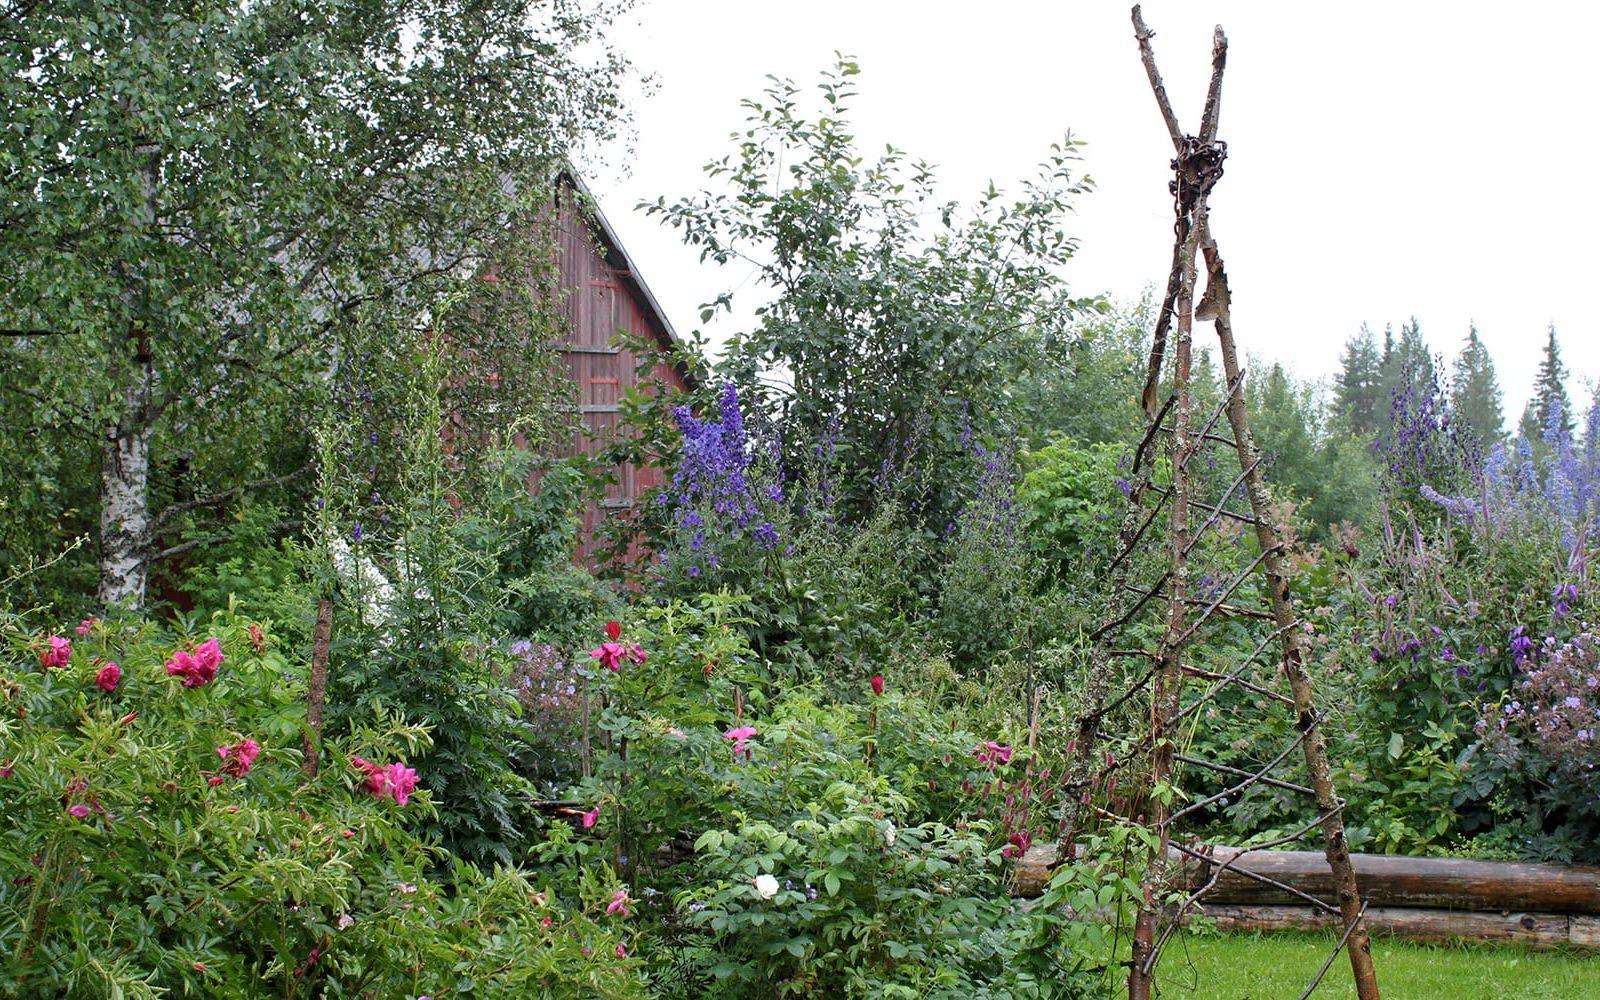 Hemma hos Mariana Mattsson i Norrbyberg i Lappland är växtligheten enorm i augusti månad. Foto: Gunnel Carlson